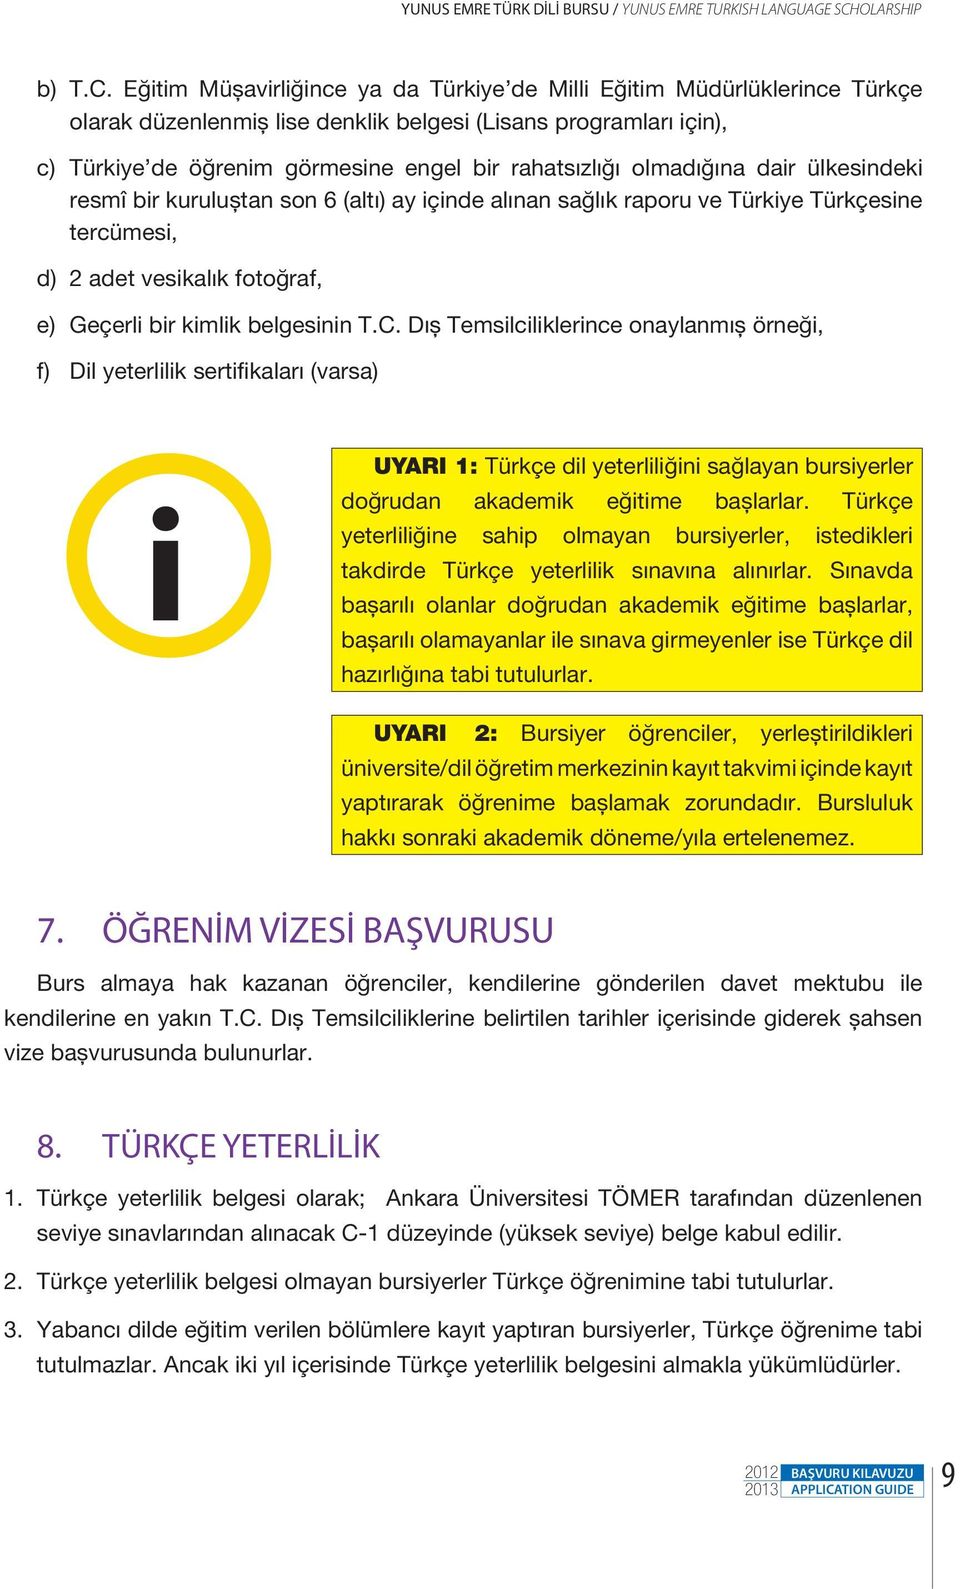 Eğitim Müşavirliğince ya da Türkiye de Milli Eğitim Müdürlüklerince Türkçe olarak düzenlenmiş lise denklik belgesi (Lisans programları için), c) Türkiye de öğrenim görmesine engel bir rahatsızlığı